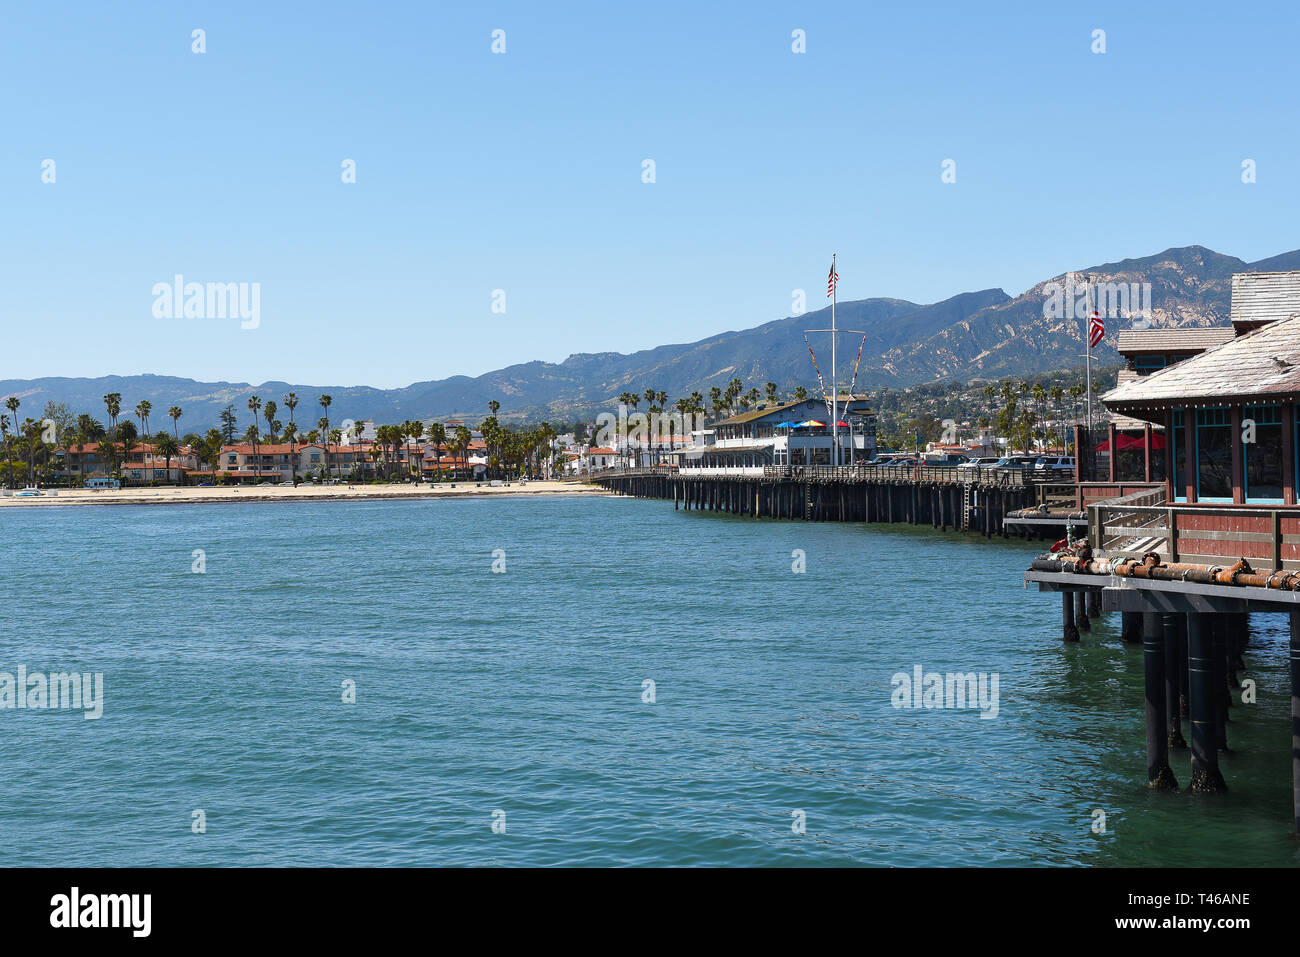 SANTA BARBARA, CALIFORNIE - Le 11 avril 2019 : Stearns Wharf à la recherche en direction du centre-ville de Santa Barbara avec les montagnes de Santa Ynez dans la distance. Banque D'Images